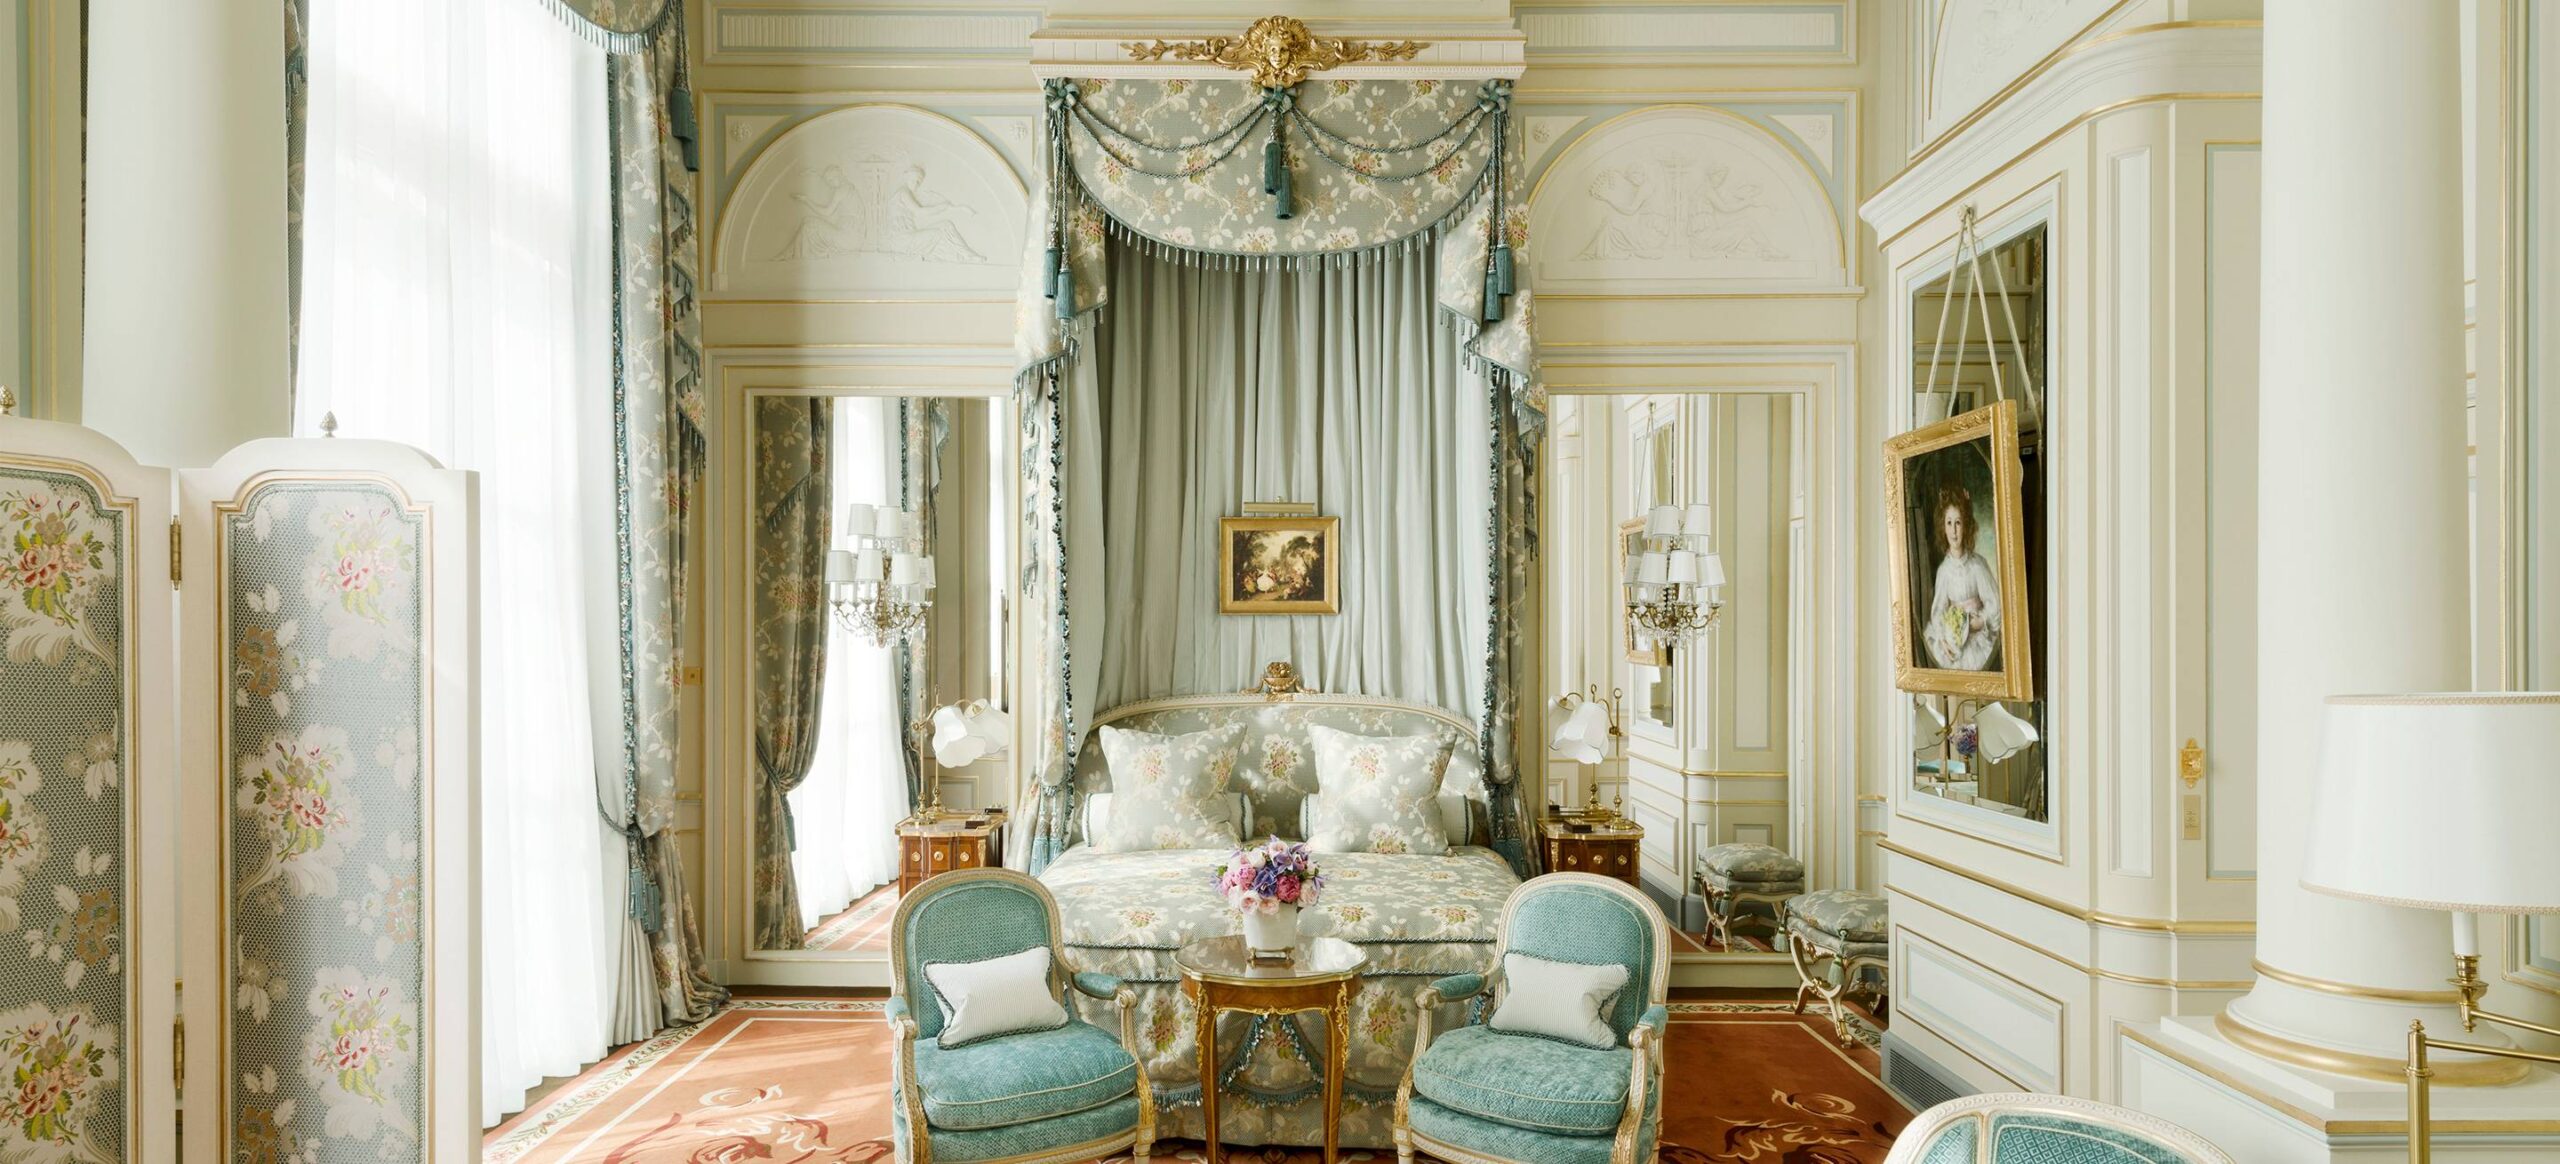 The Royal Suite, The Ritz Paris - Exploring the World's Most Opulent Hotel Suites